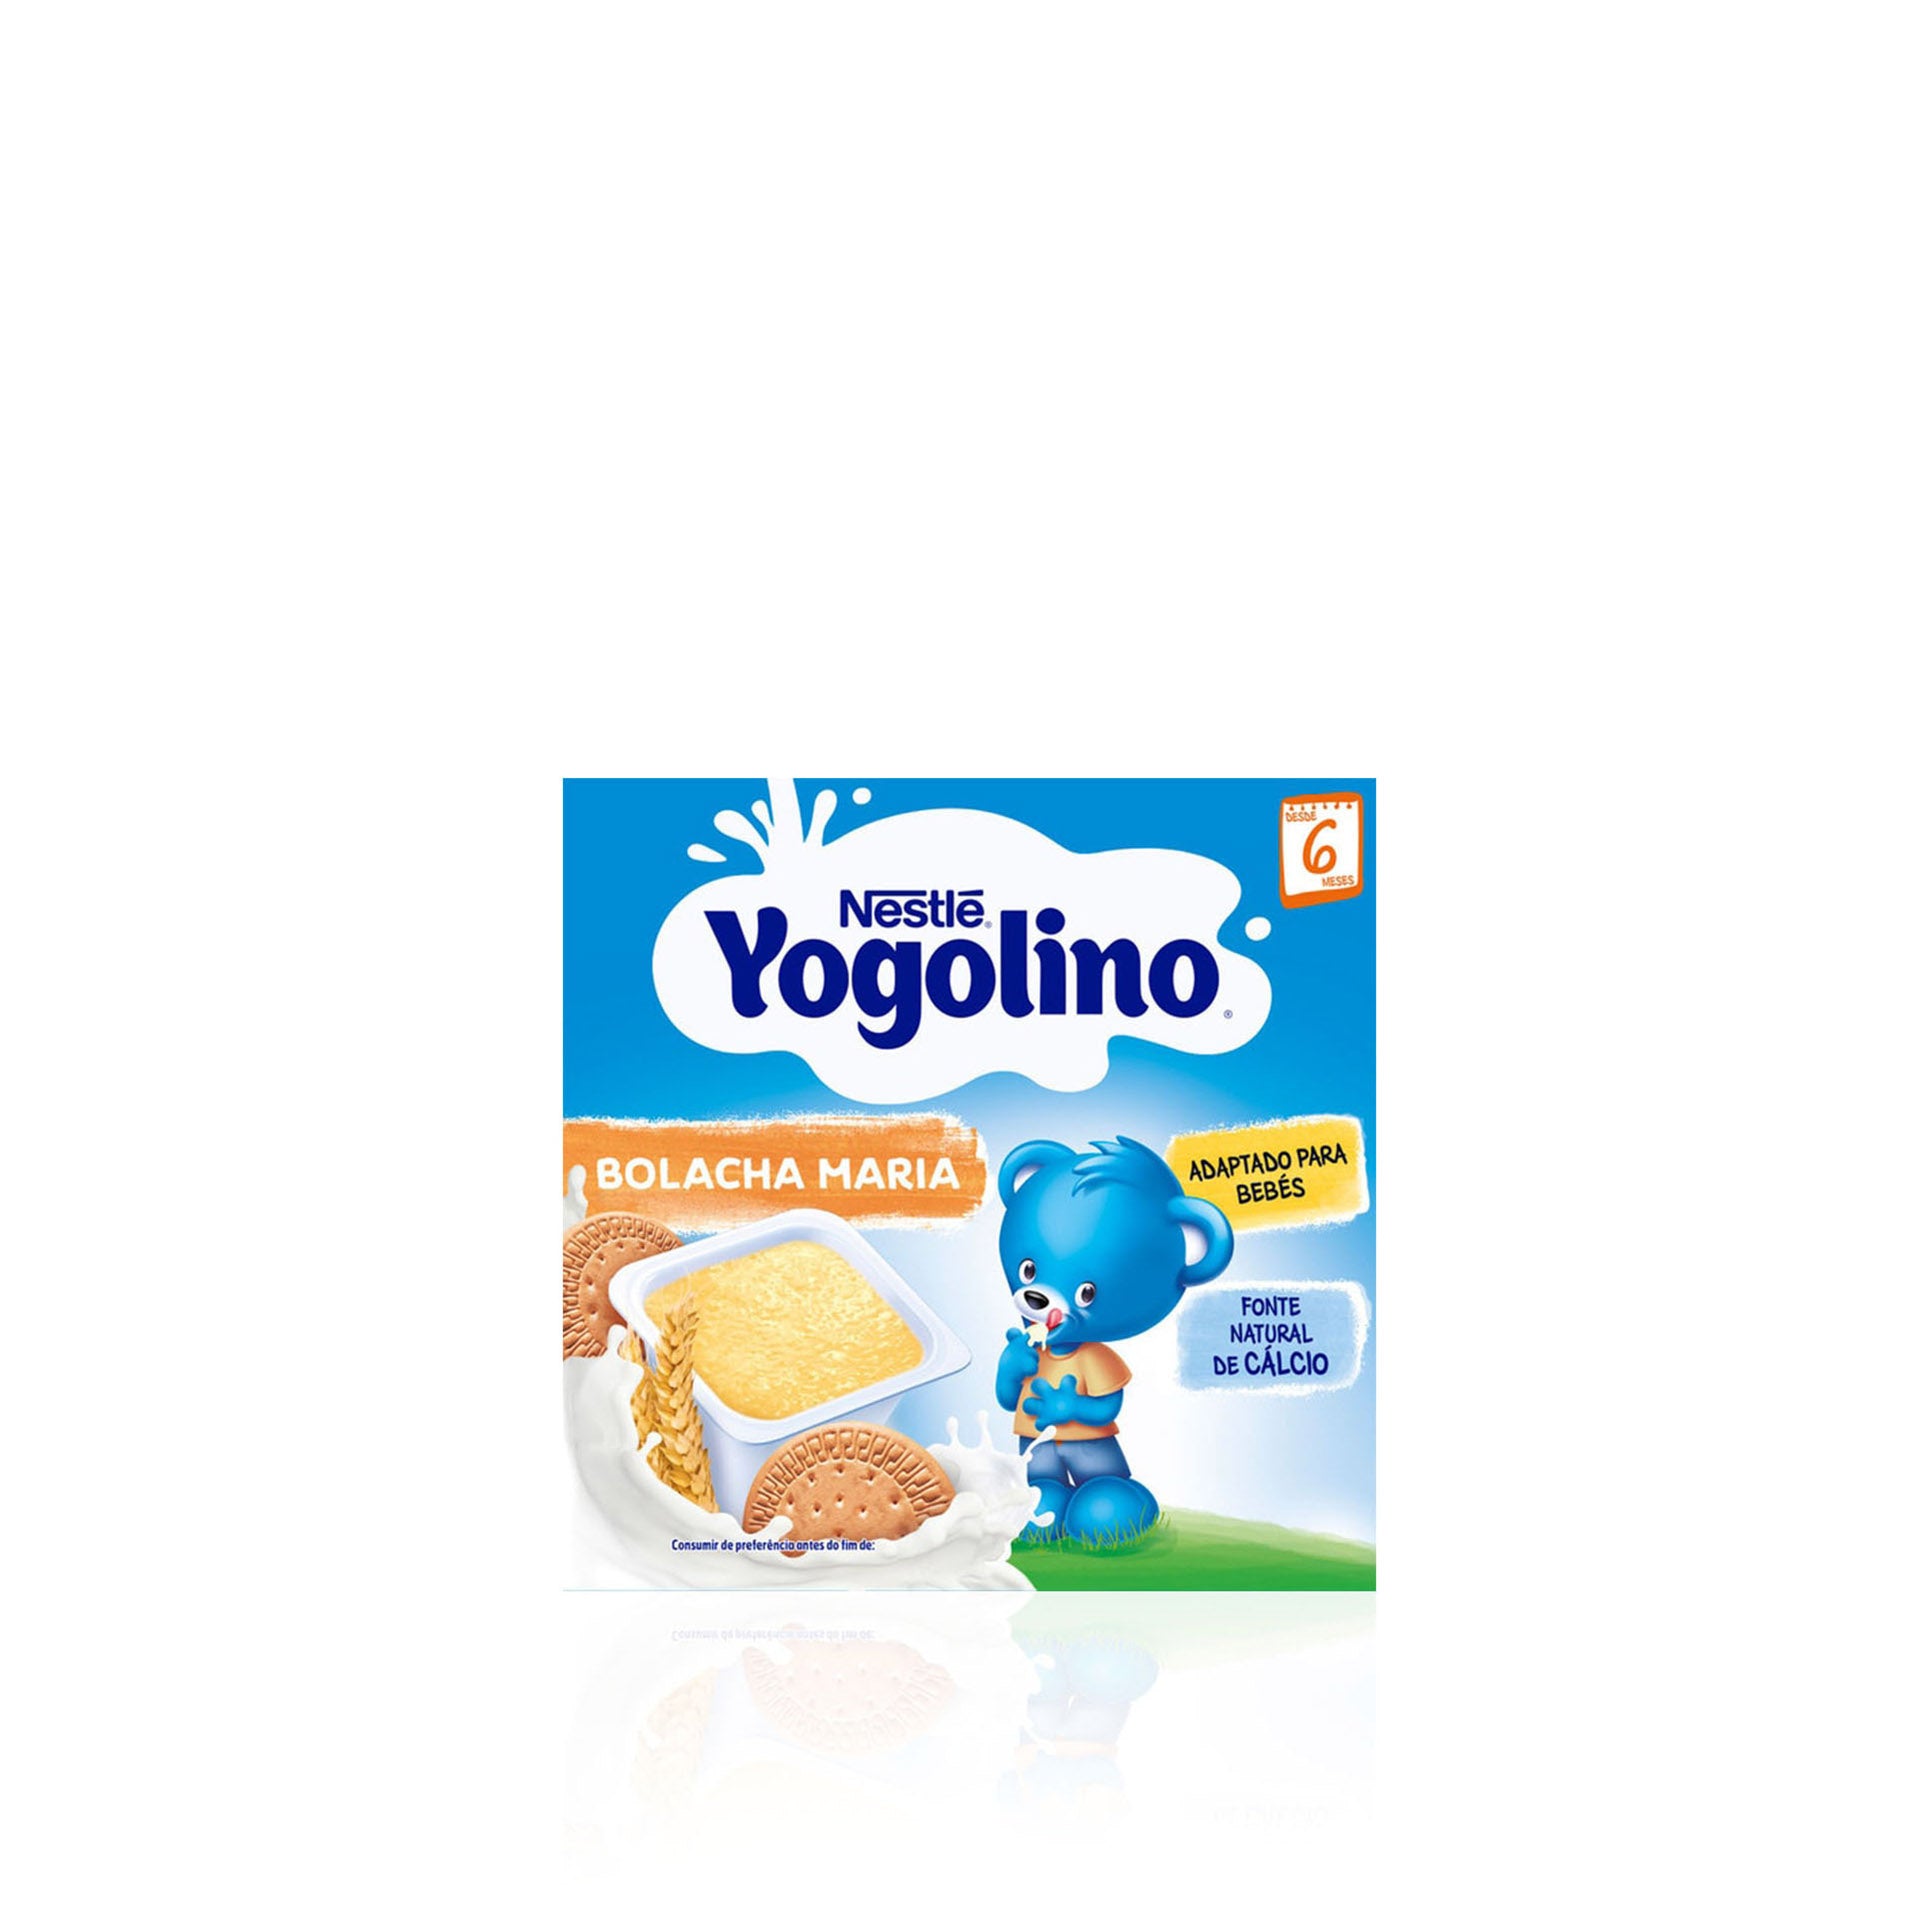 Nestlé Yogolino Cereais e Bolacha Maria (+6 meses) Pack 4 x 100 gr